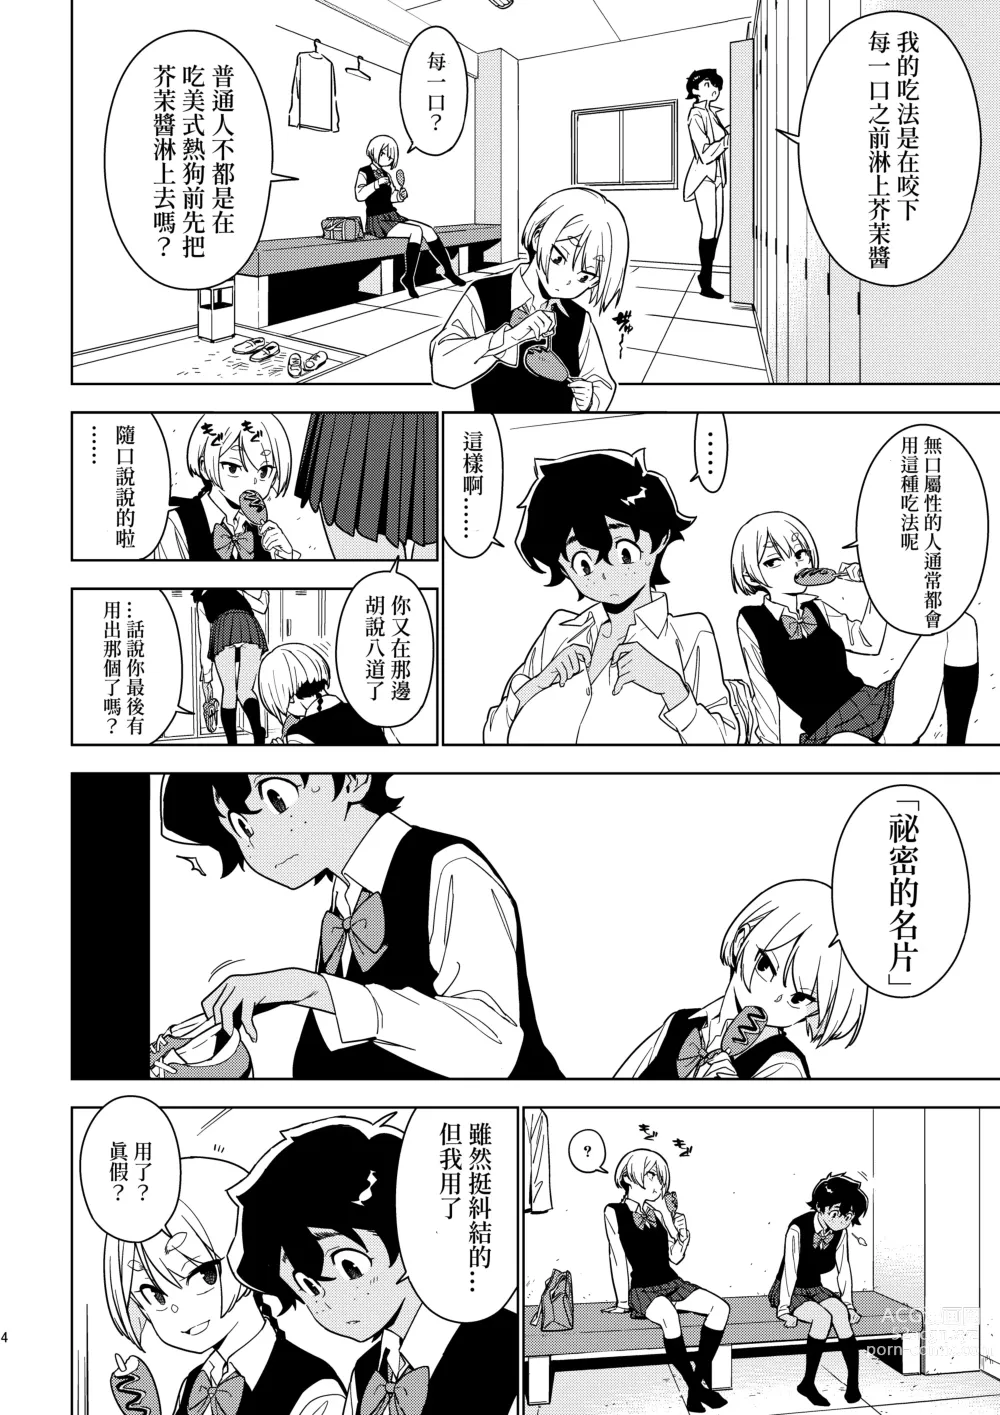 Page 3 of doujinshi Seiko